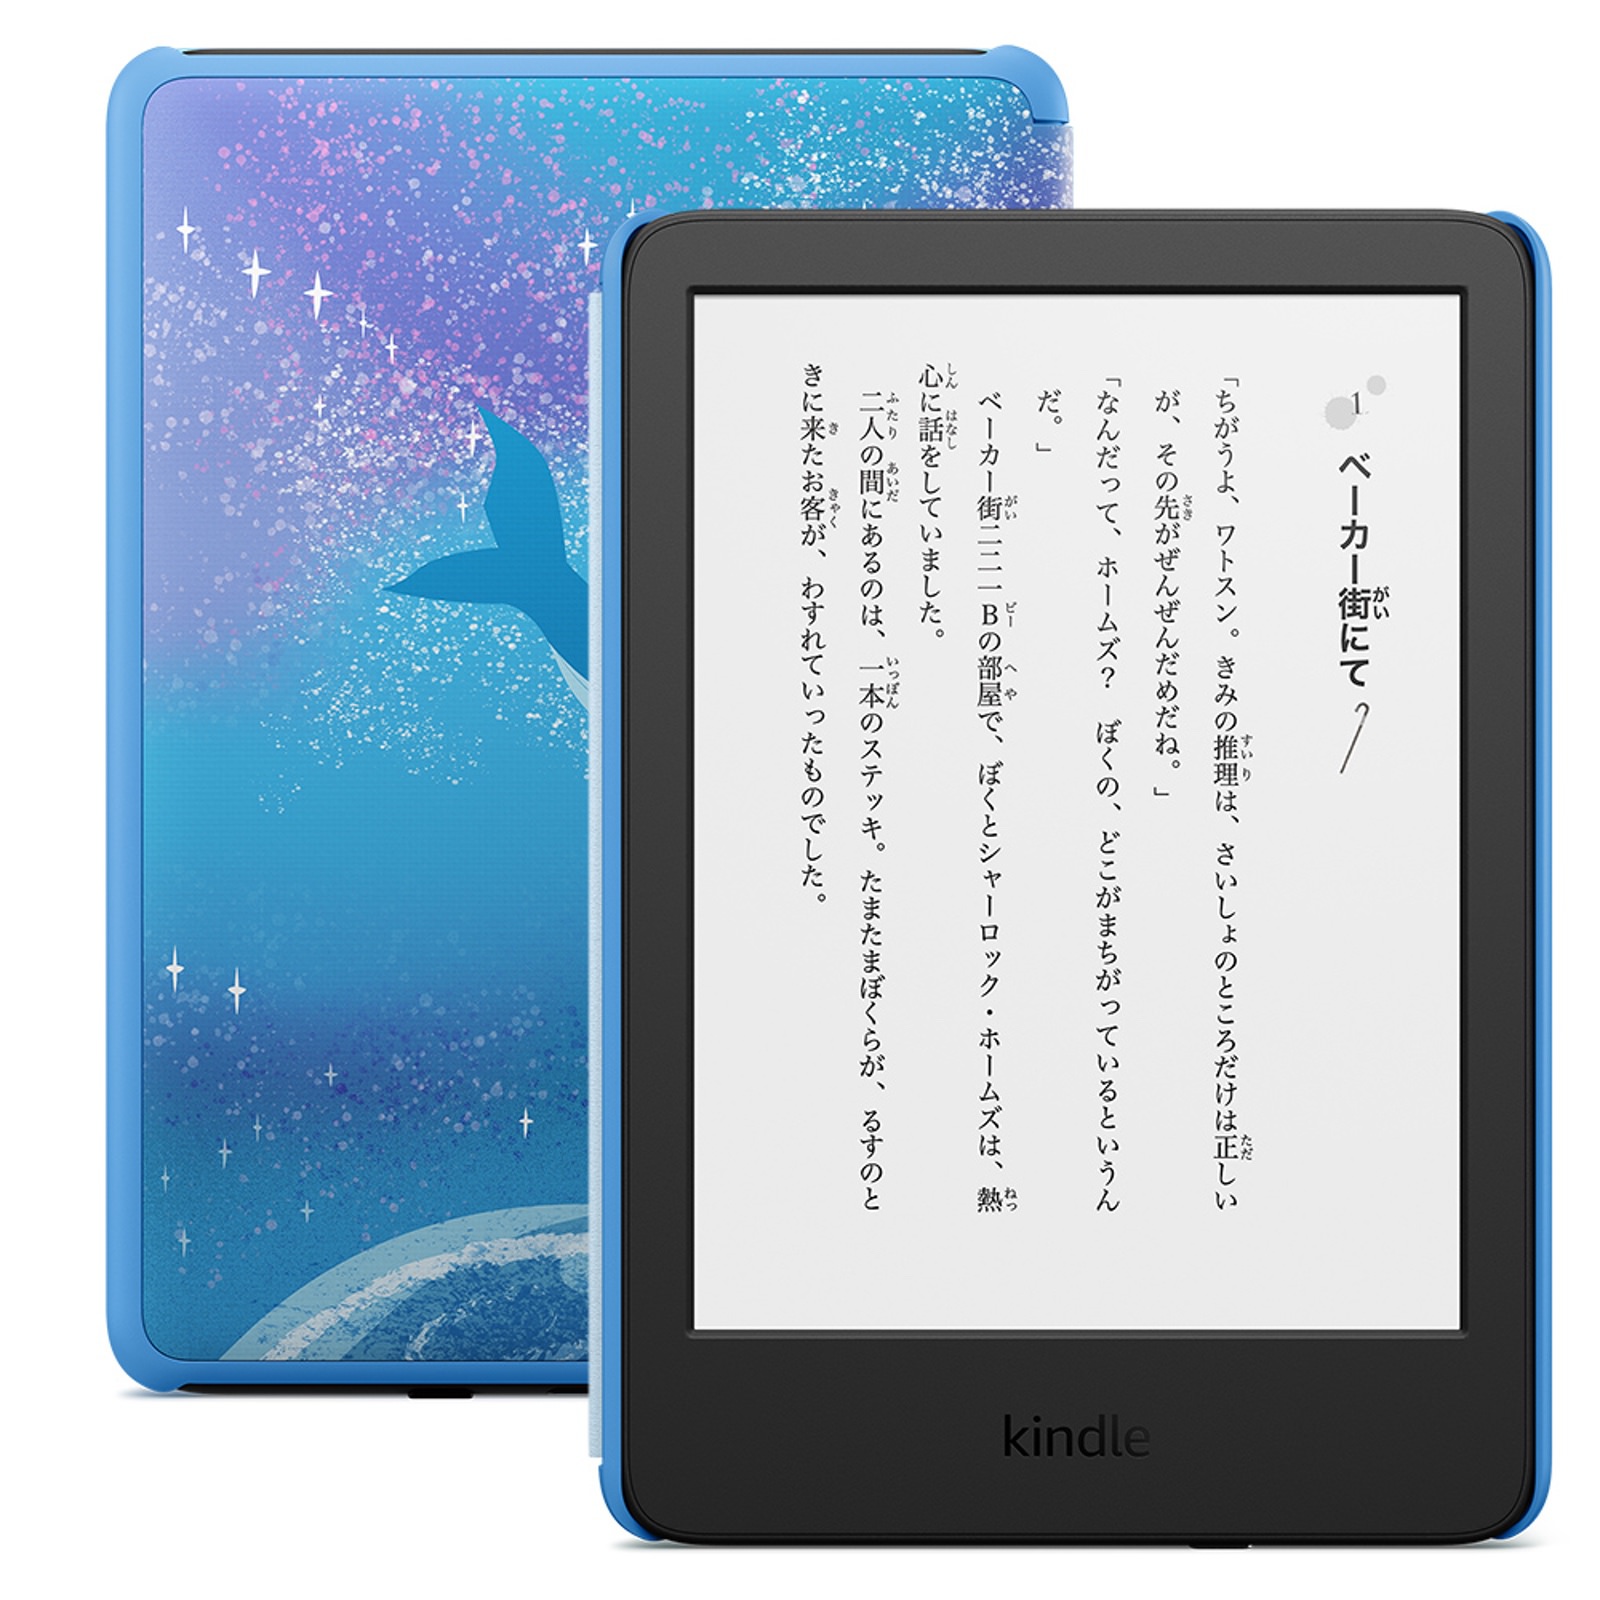 New-Kindle-and-KindleKidsModel-from-Amazon-05.jpg